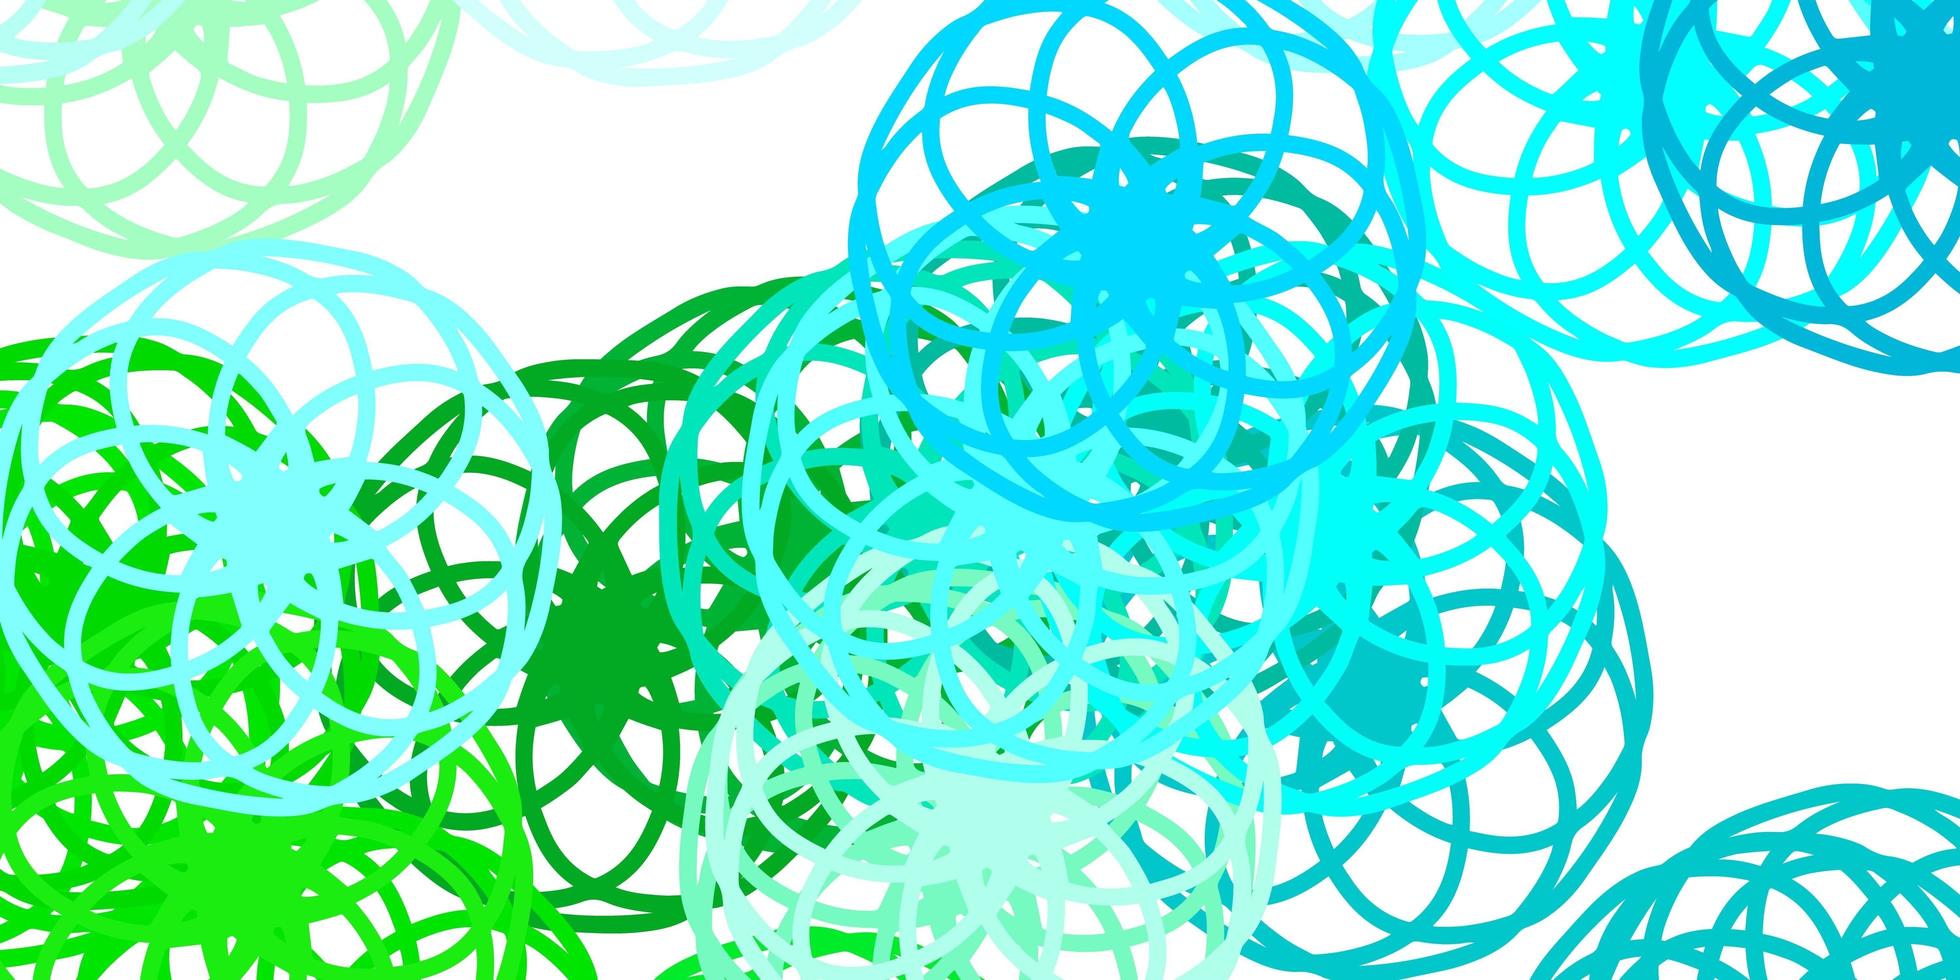 hellblaue, grüne Vektortextur mit Scheiben vektor